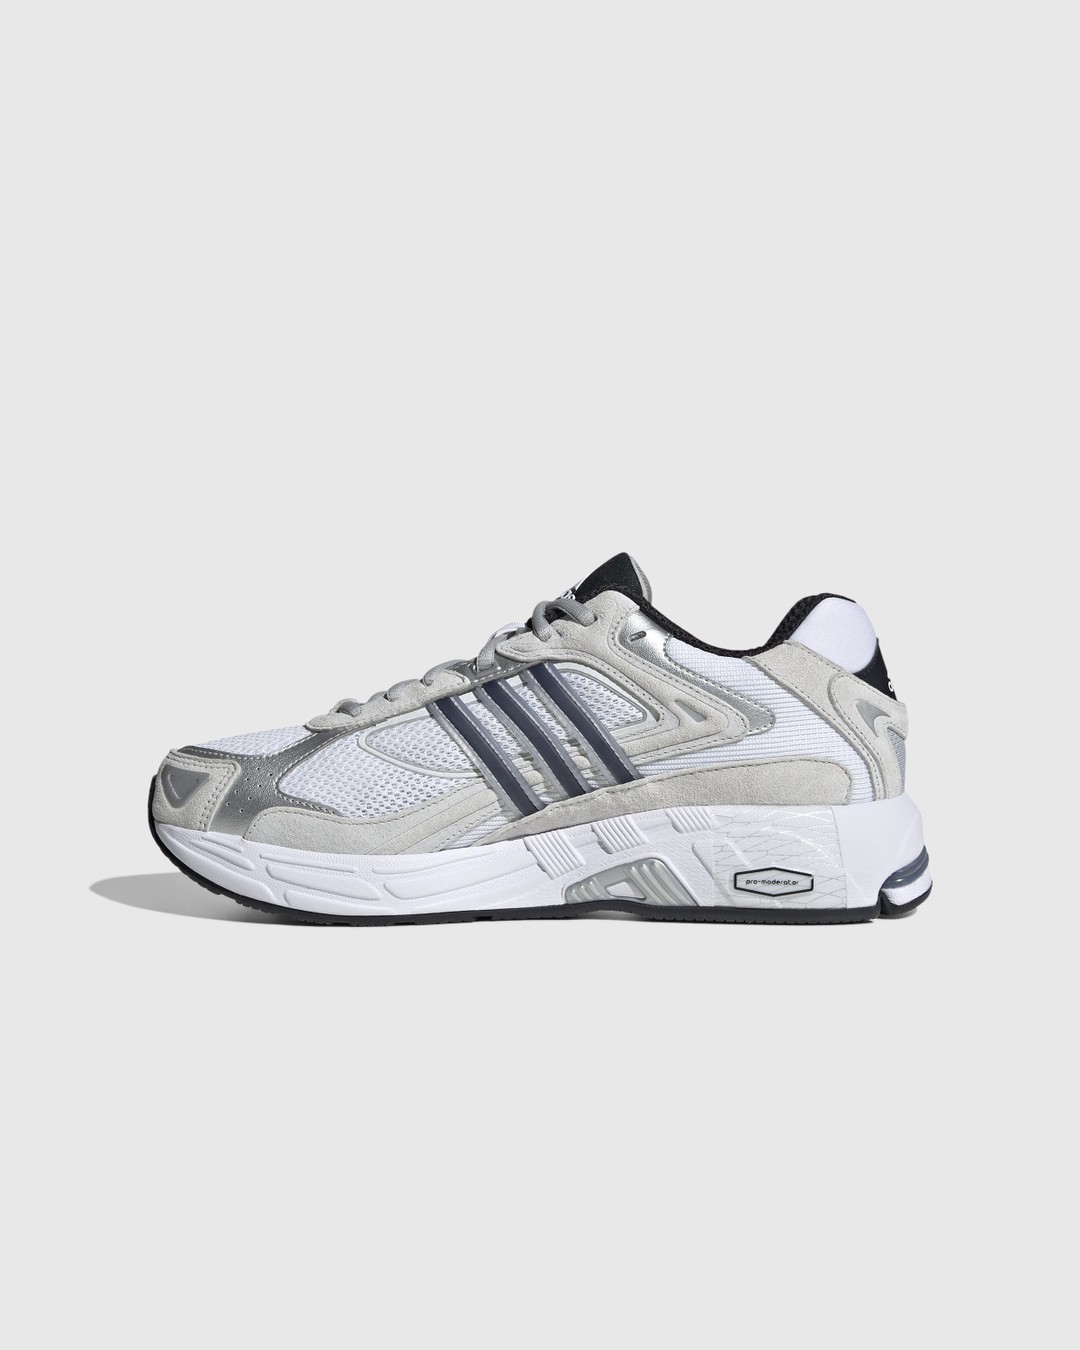 Adidas – Response CL White/Black  - Sneakers - White - Image 2